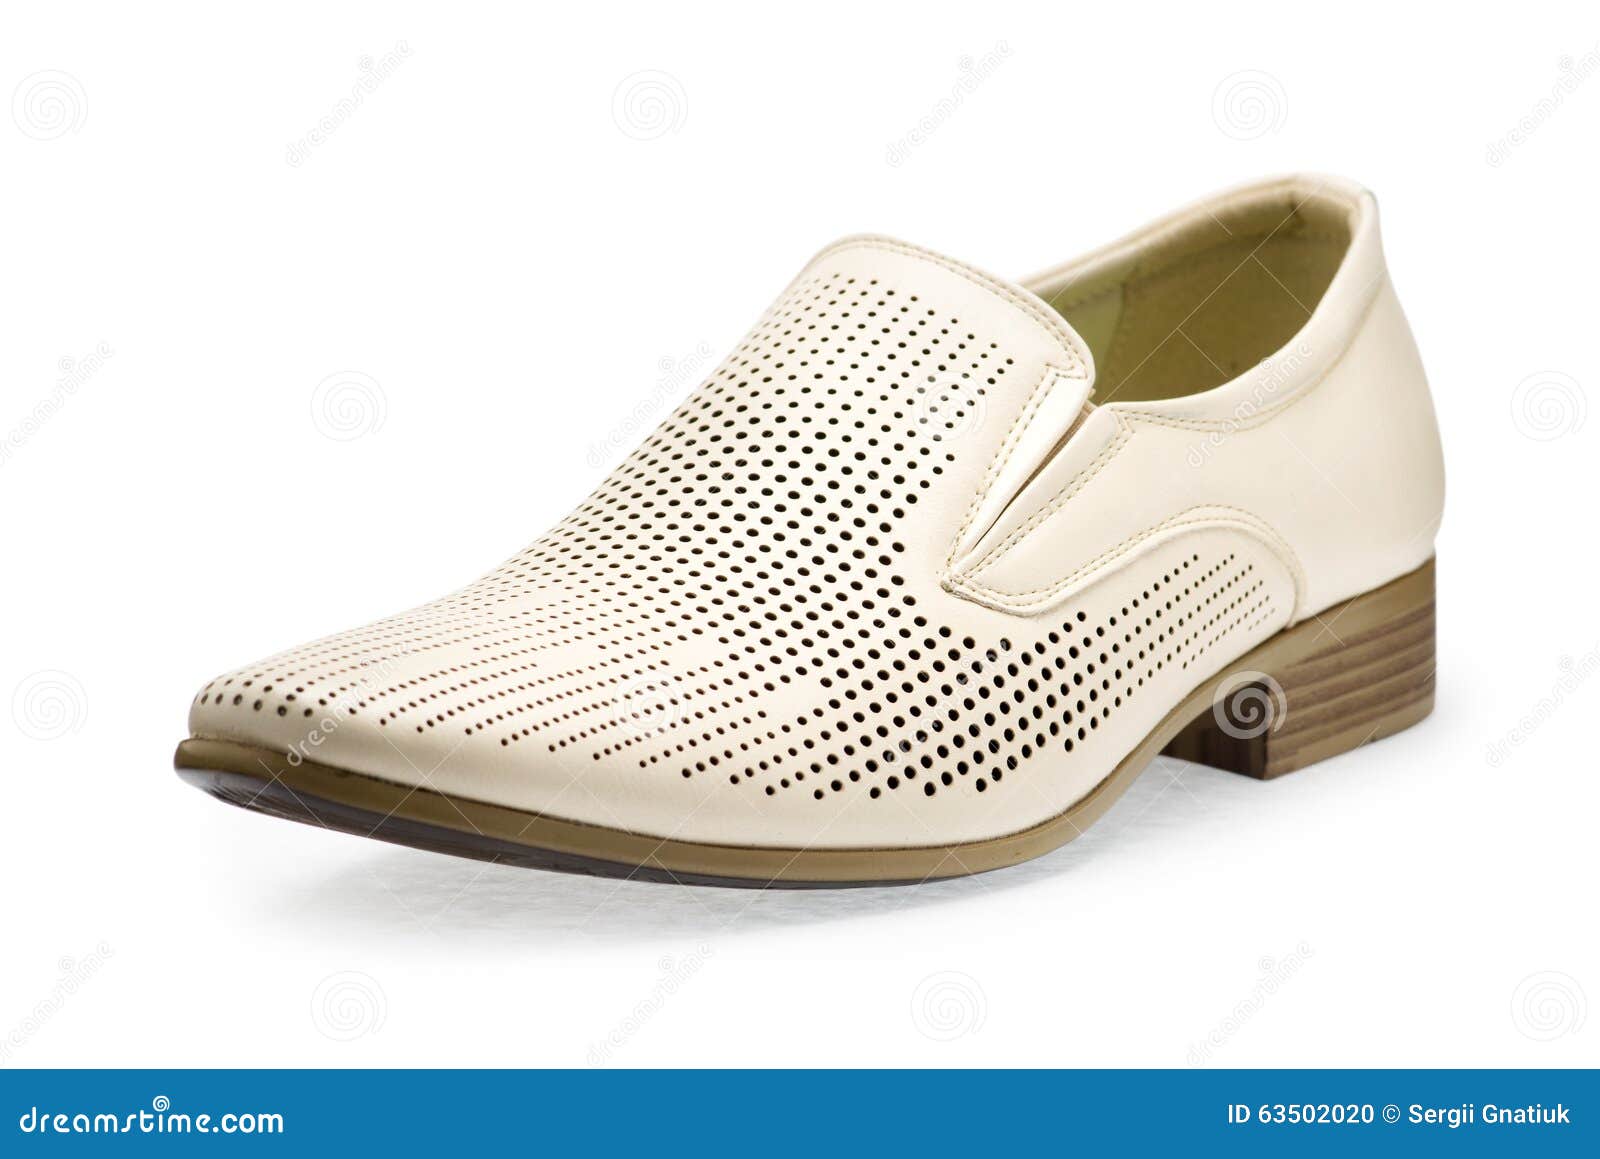 zapatos de cuero blanco hombre